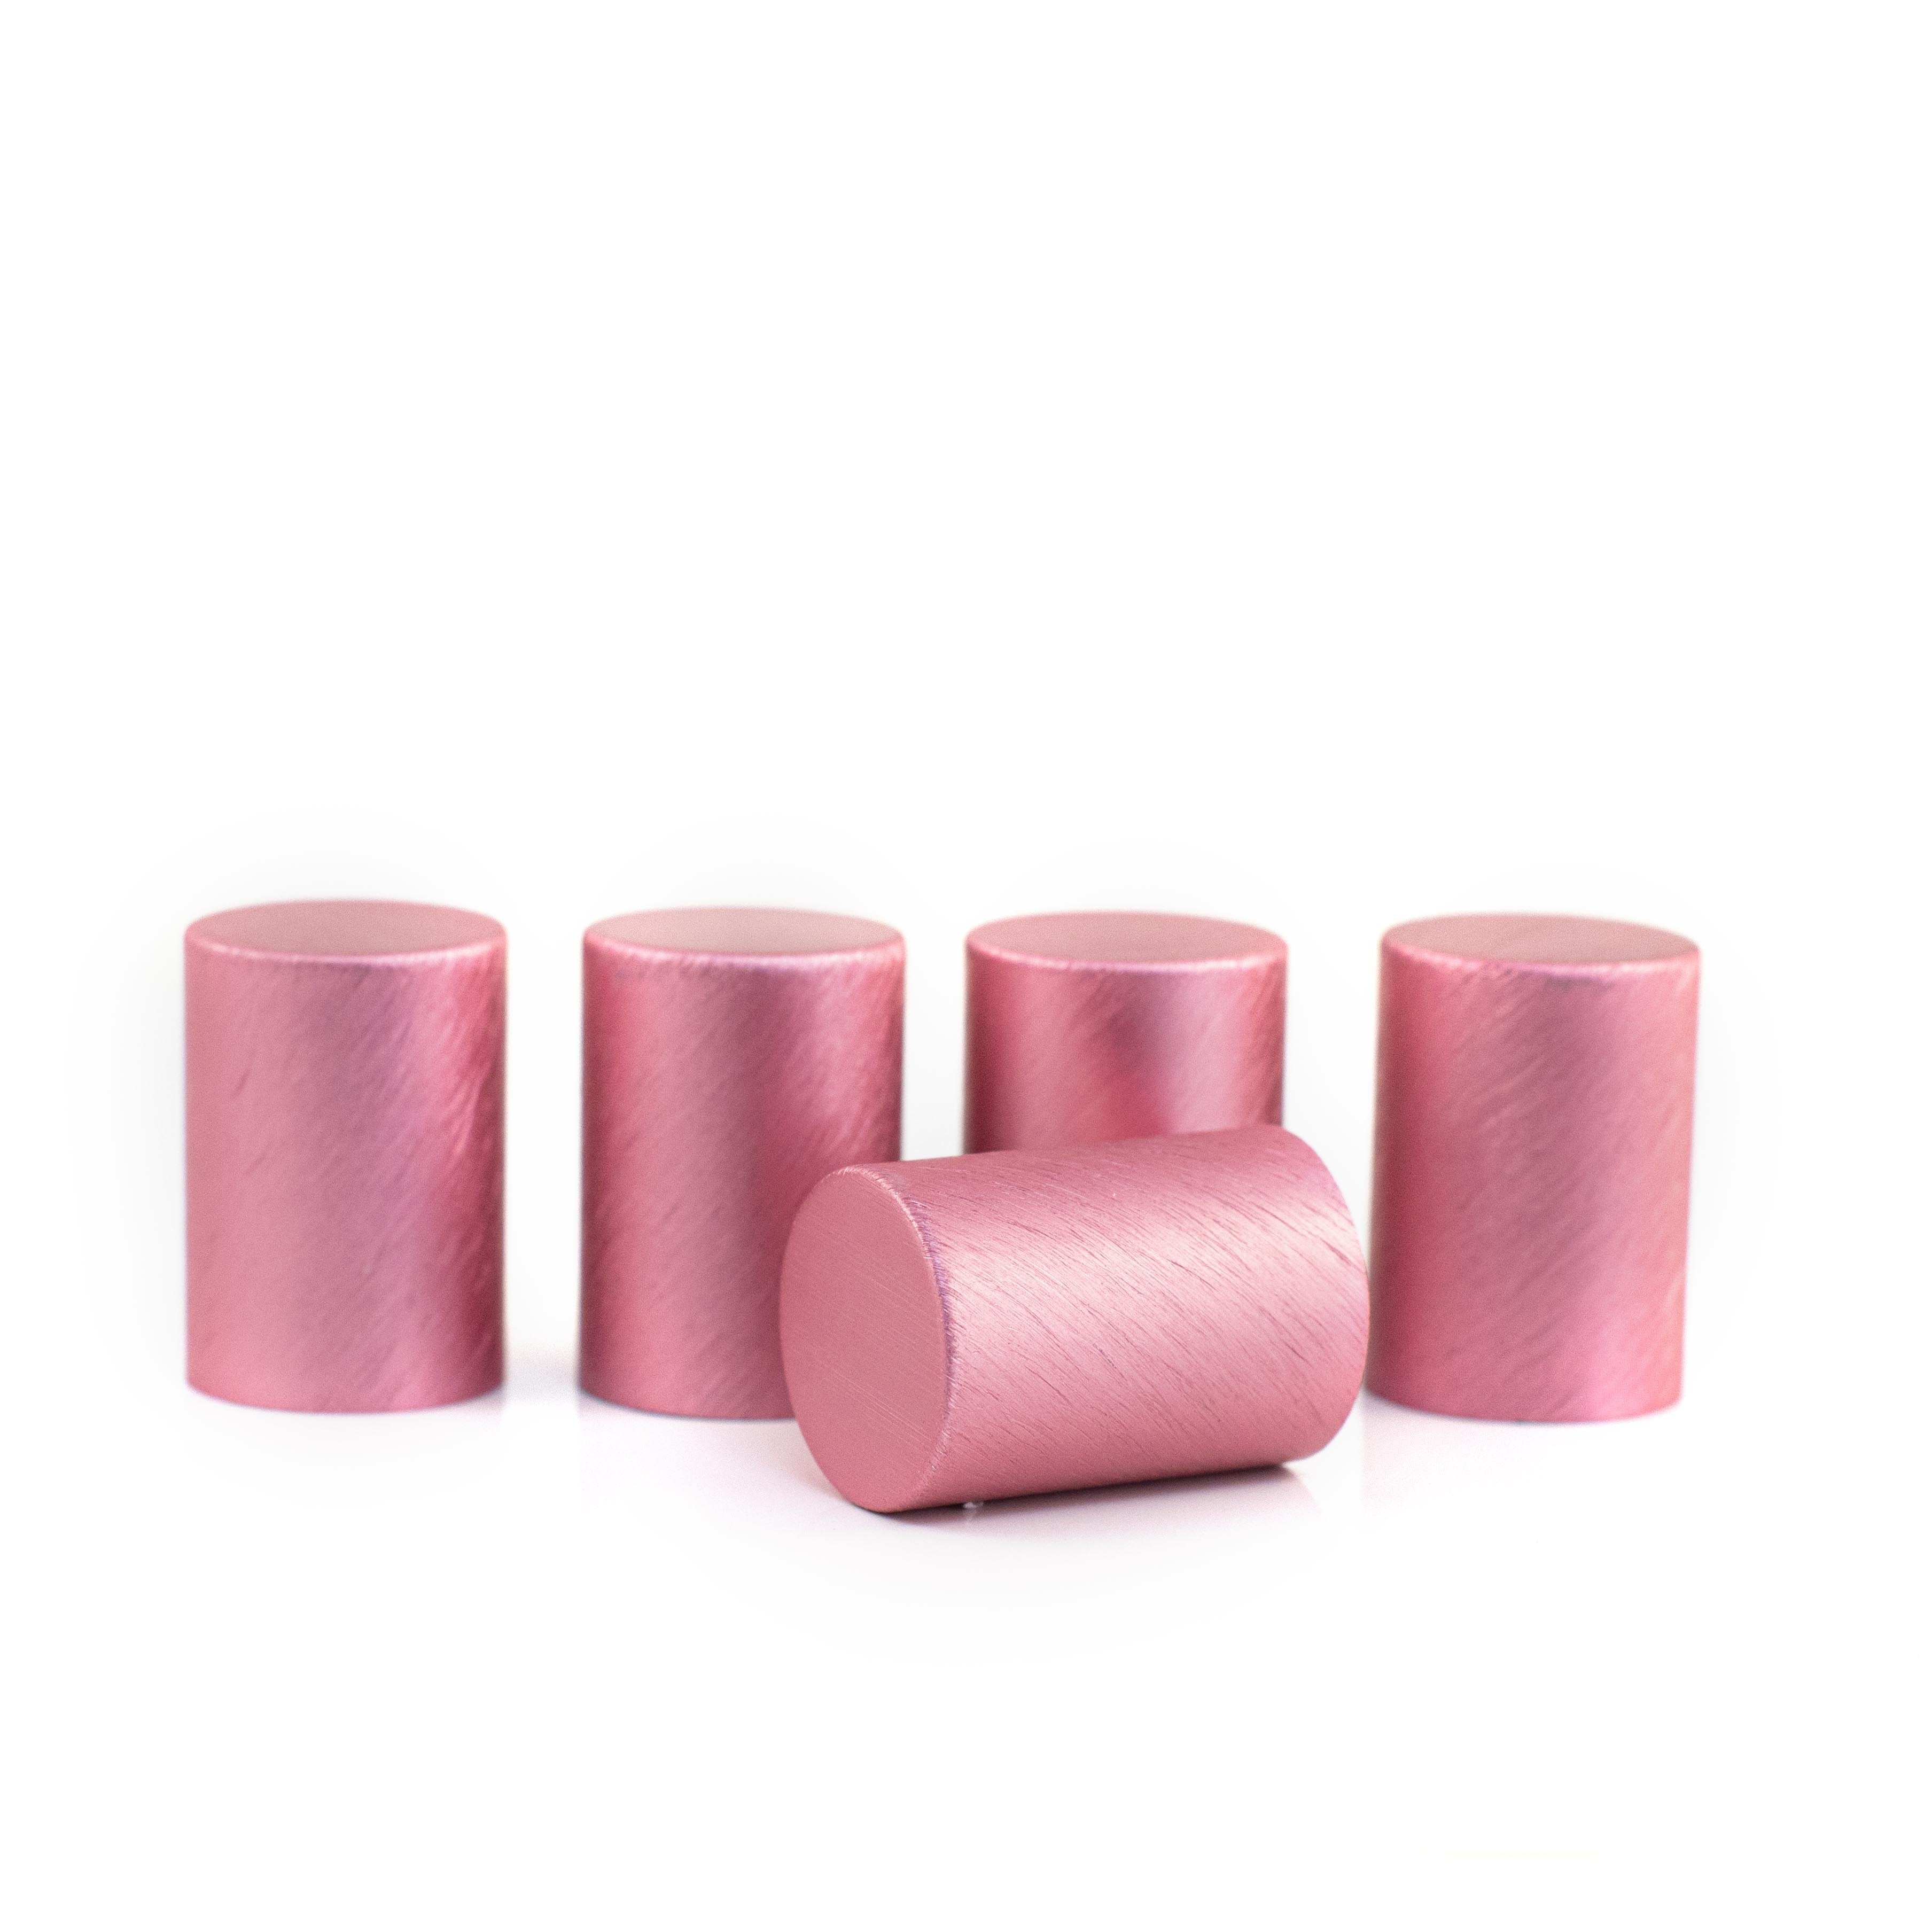 Fém kupakok (5 darab) Roll-on üveghengerhez, Pink színben